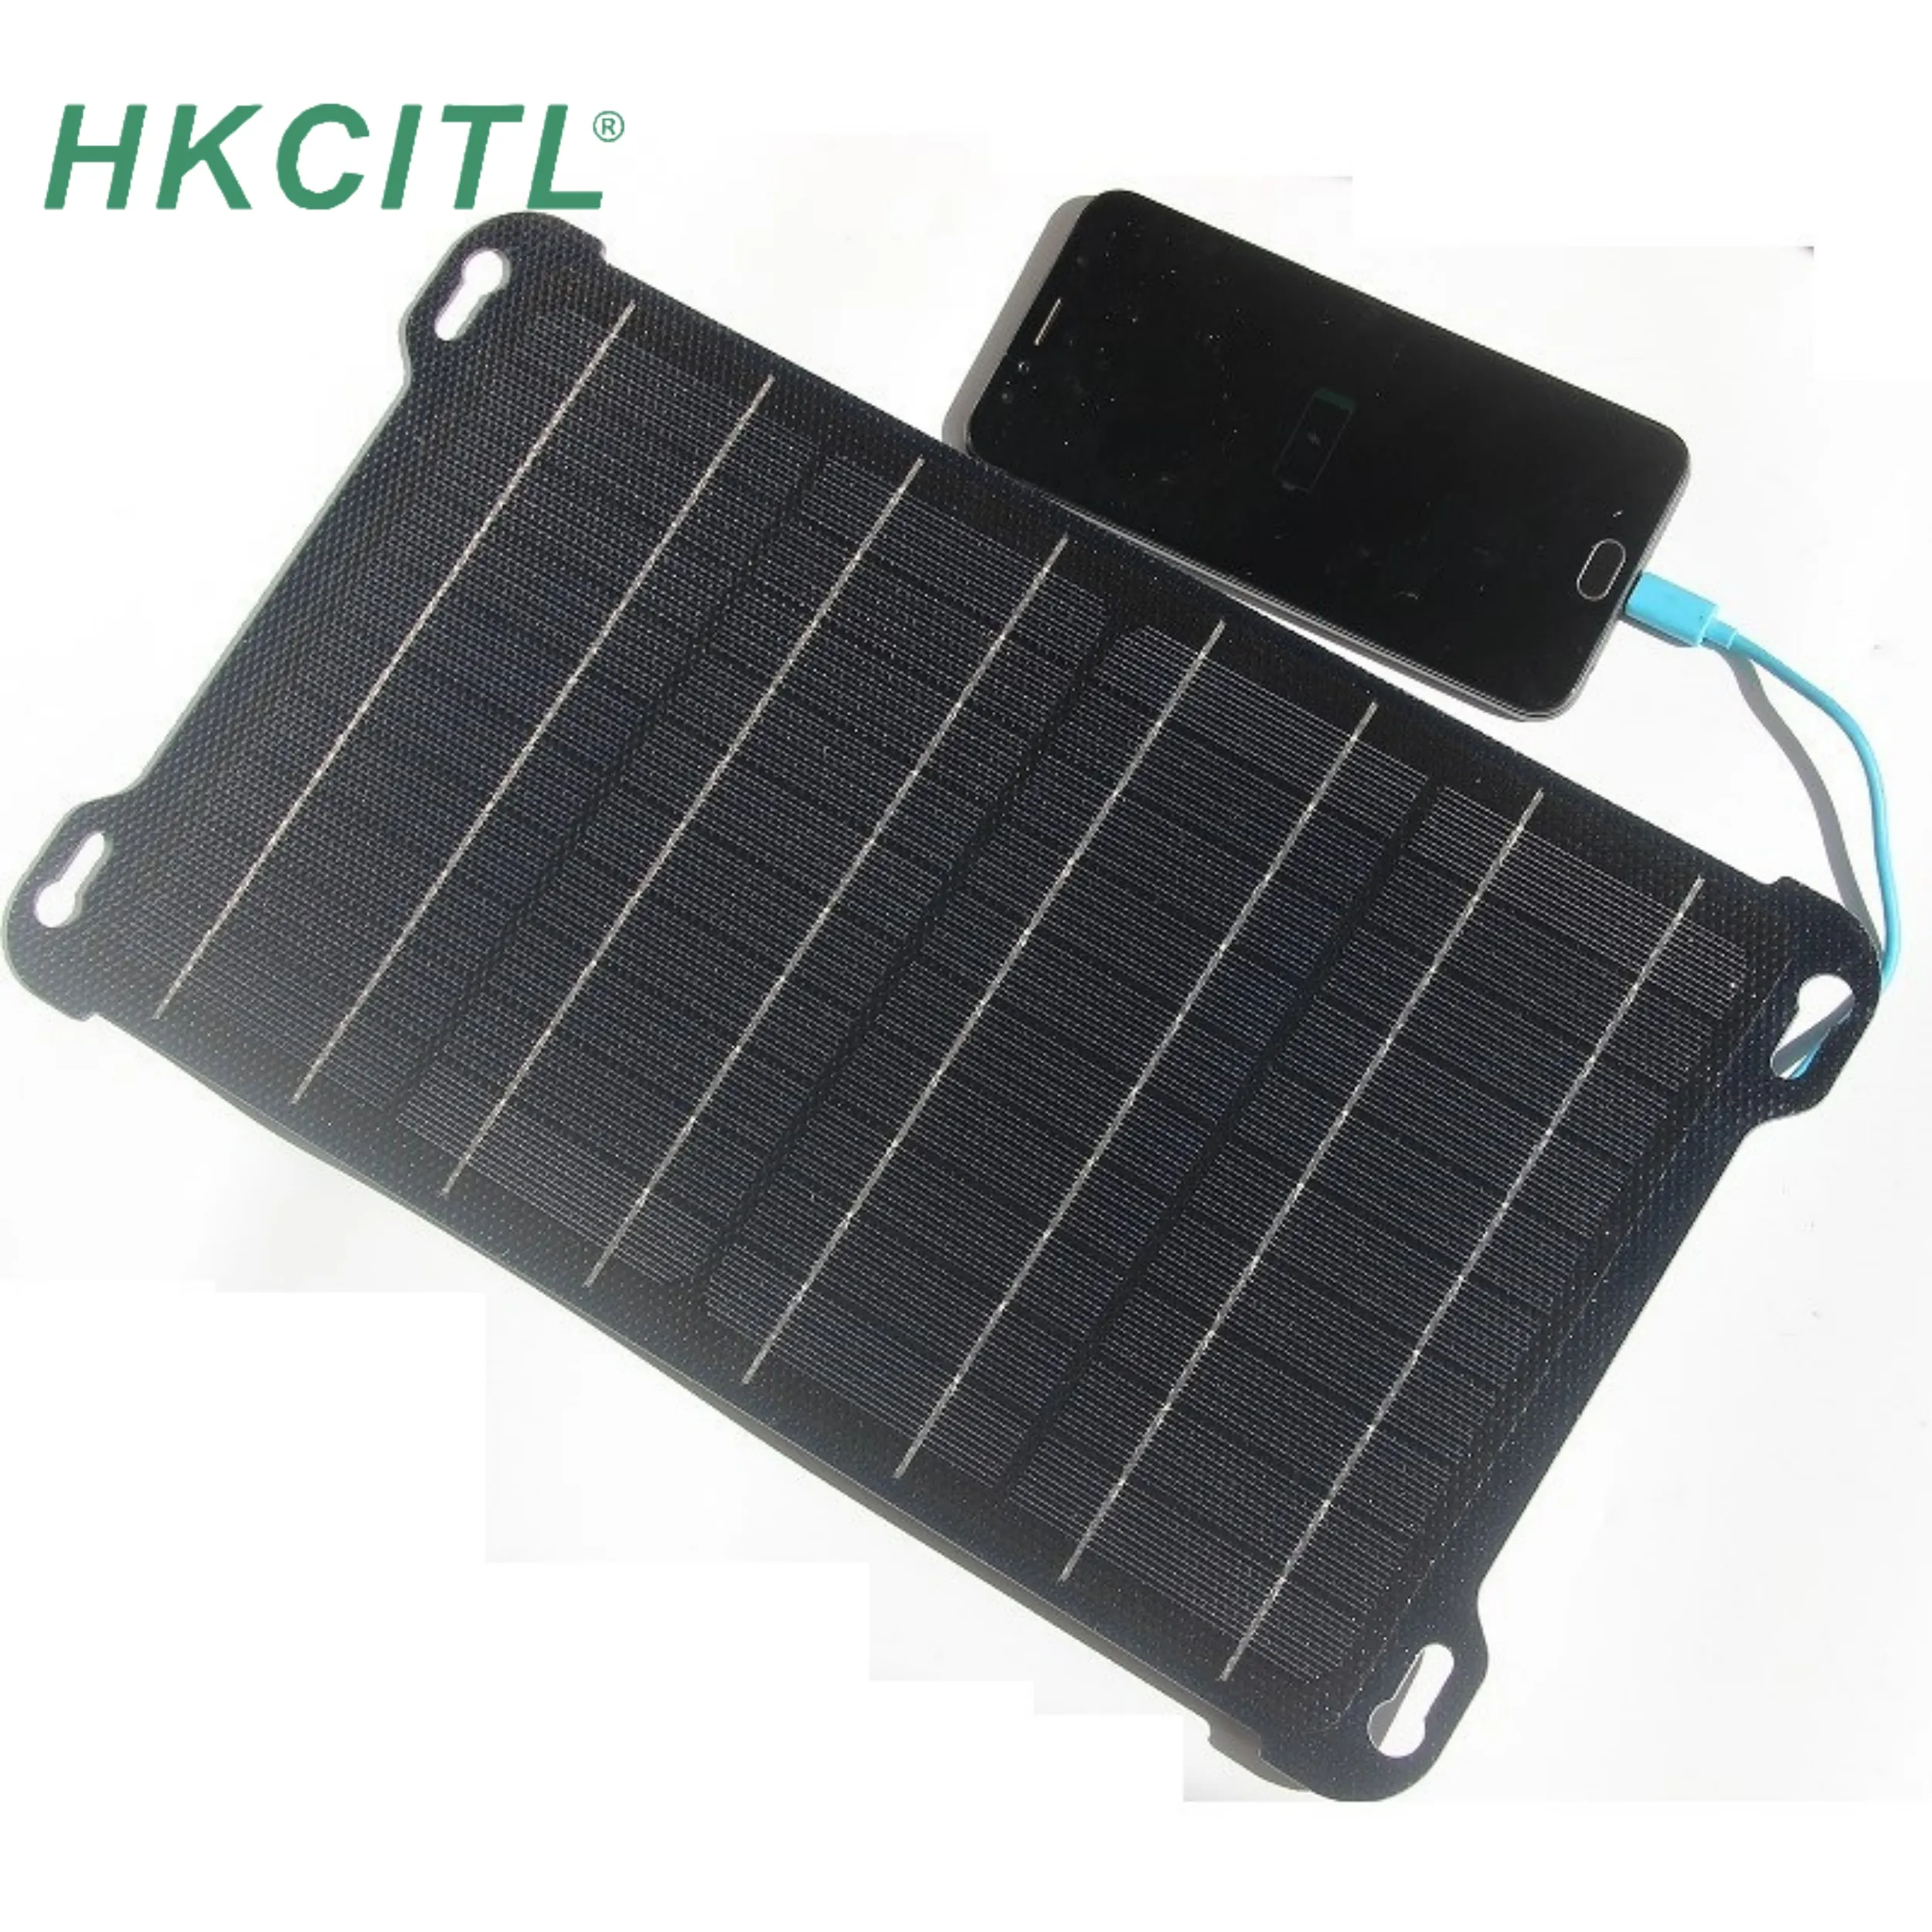 Cargador de energía de panel solar portátil para teléfonos móviles y productos electrónicos con cargador de batería solar 5 en 1 de 3W 8W 6V